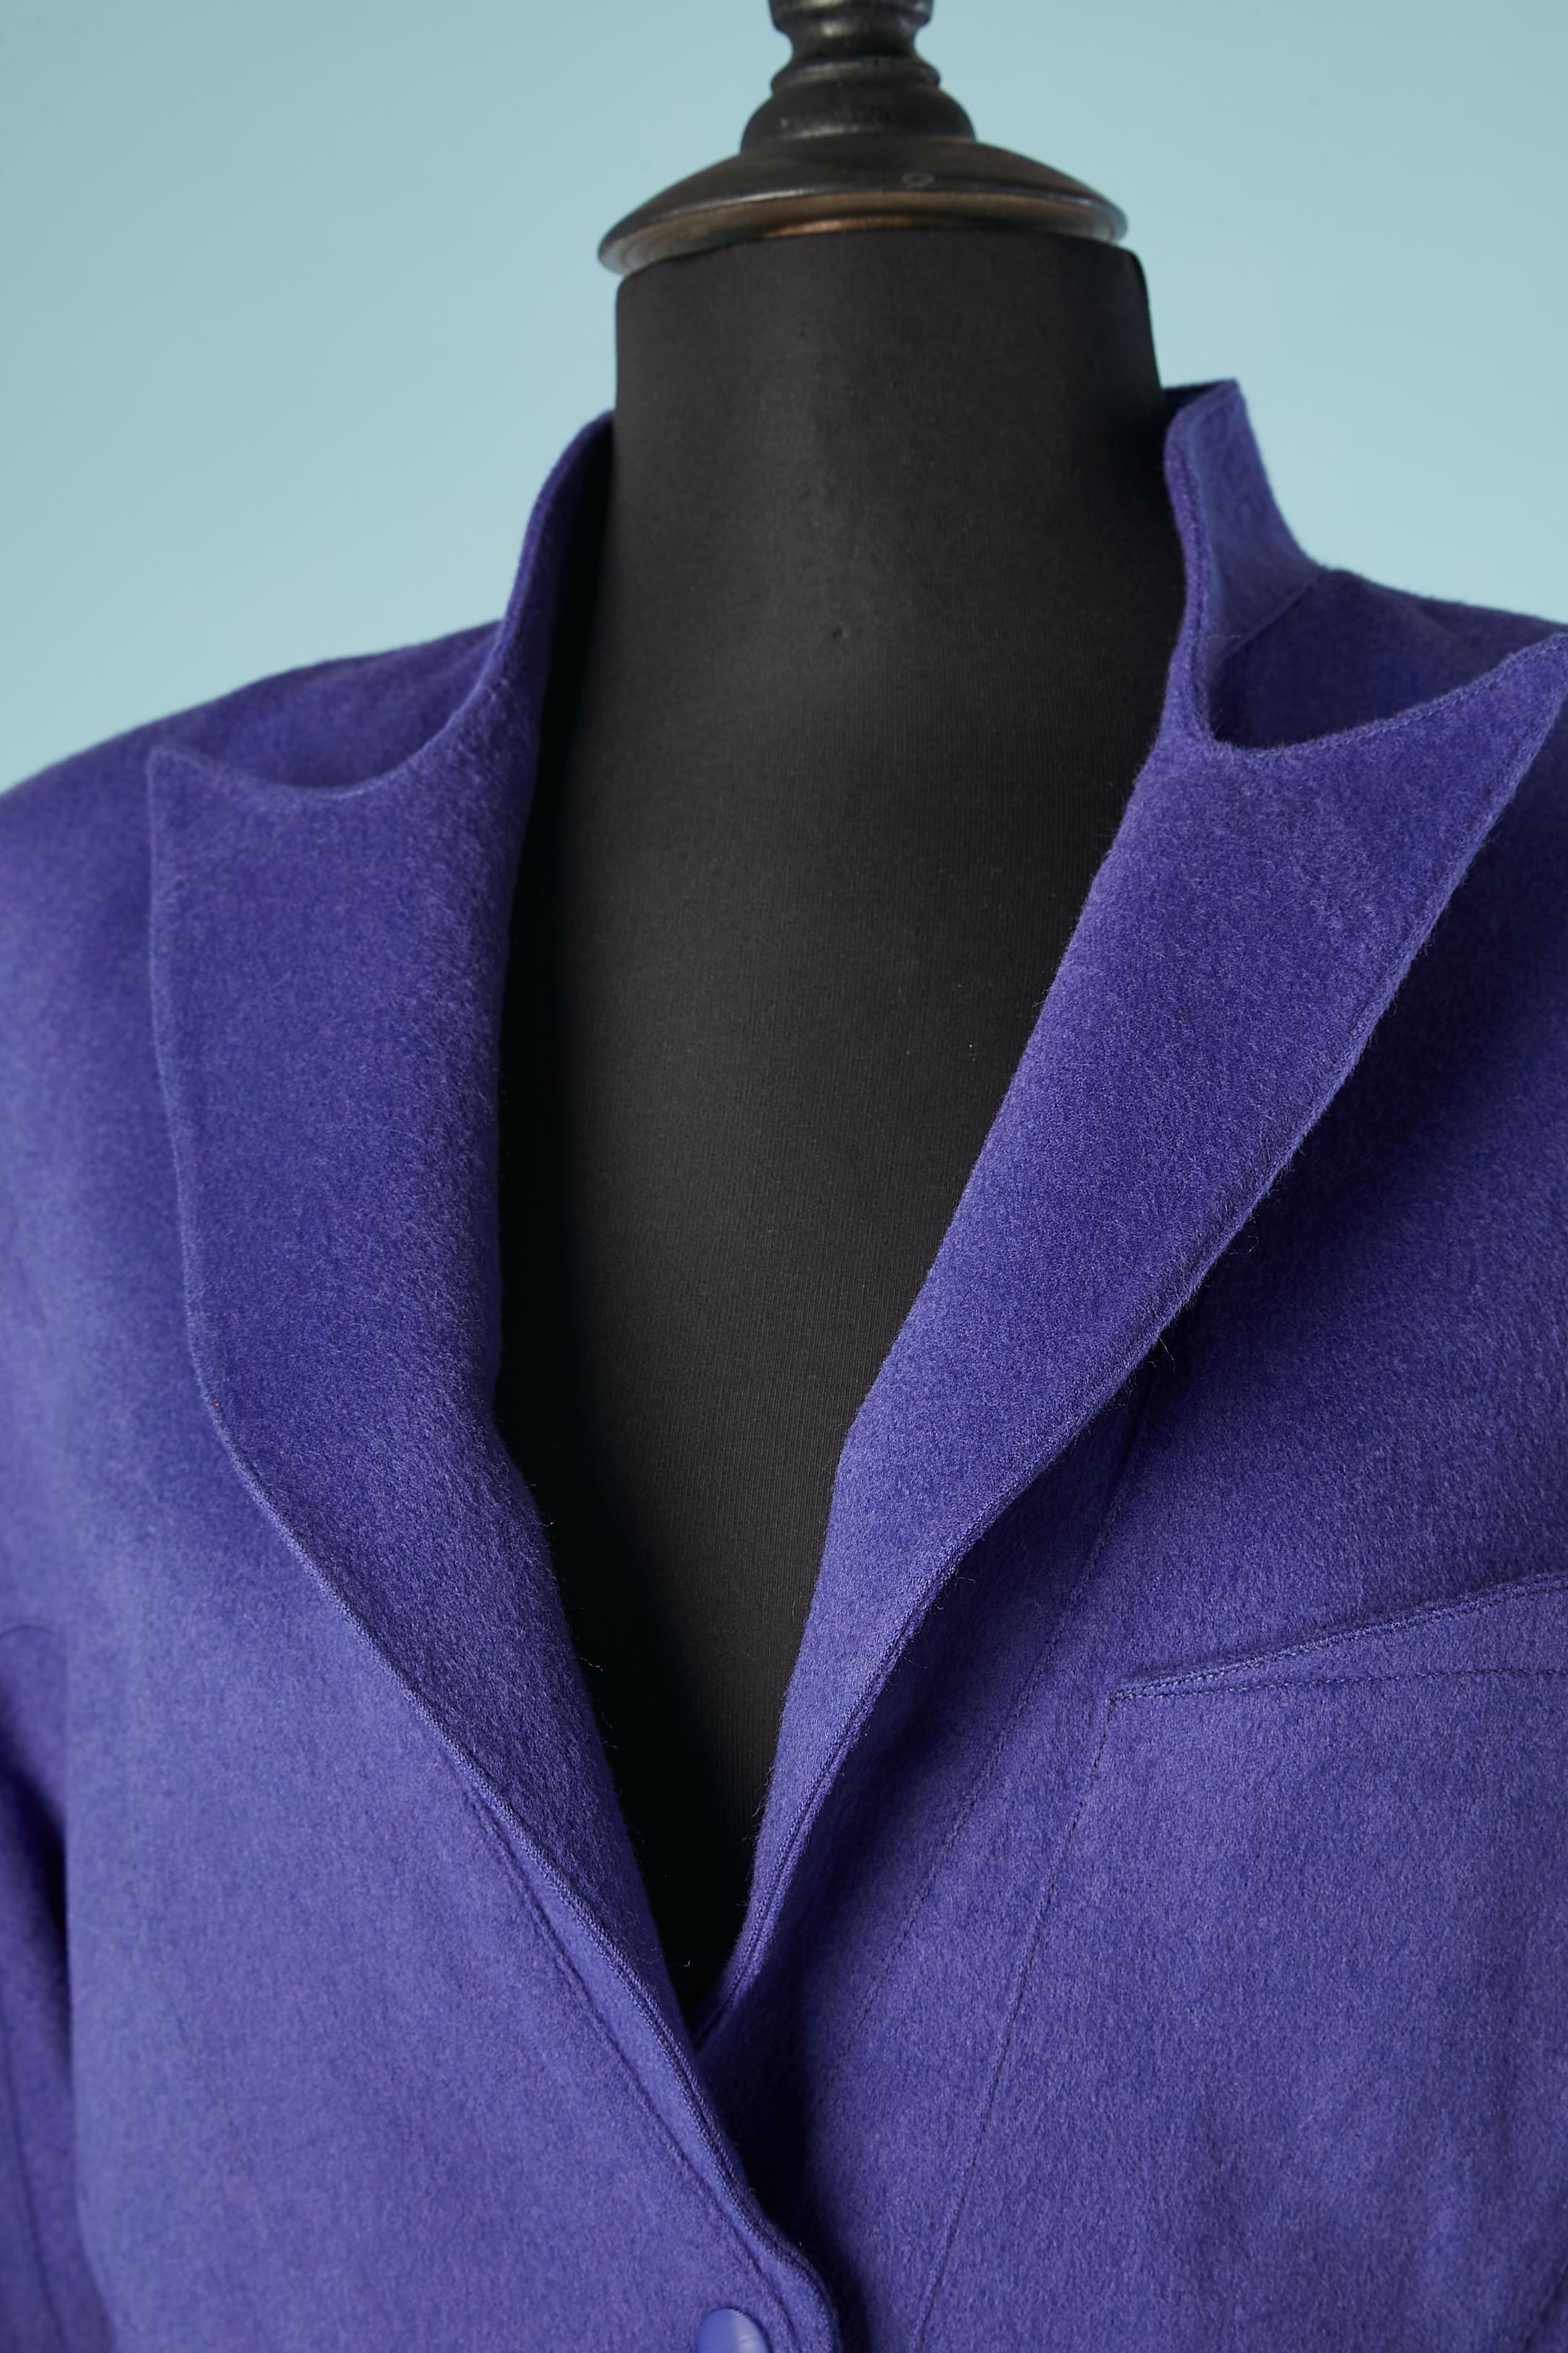 Veste en laine violet-bleu (mélange possible avec du cachemire ou de l'alpaga, mais pas d'étiquette de composition du tissu) à simple boutonnage. Snap au milieu de l'avant. Epaulettes. Buste et taille découpés. Manches raglan. Doublure en rayonne.